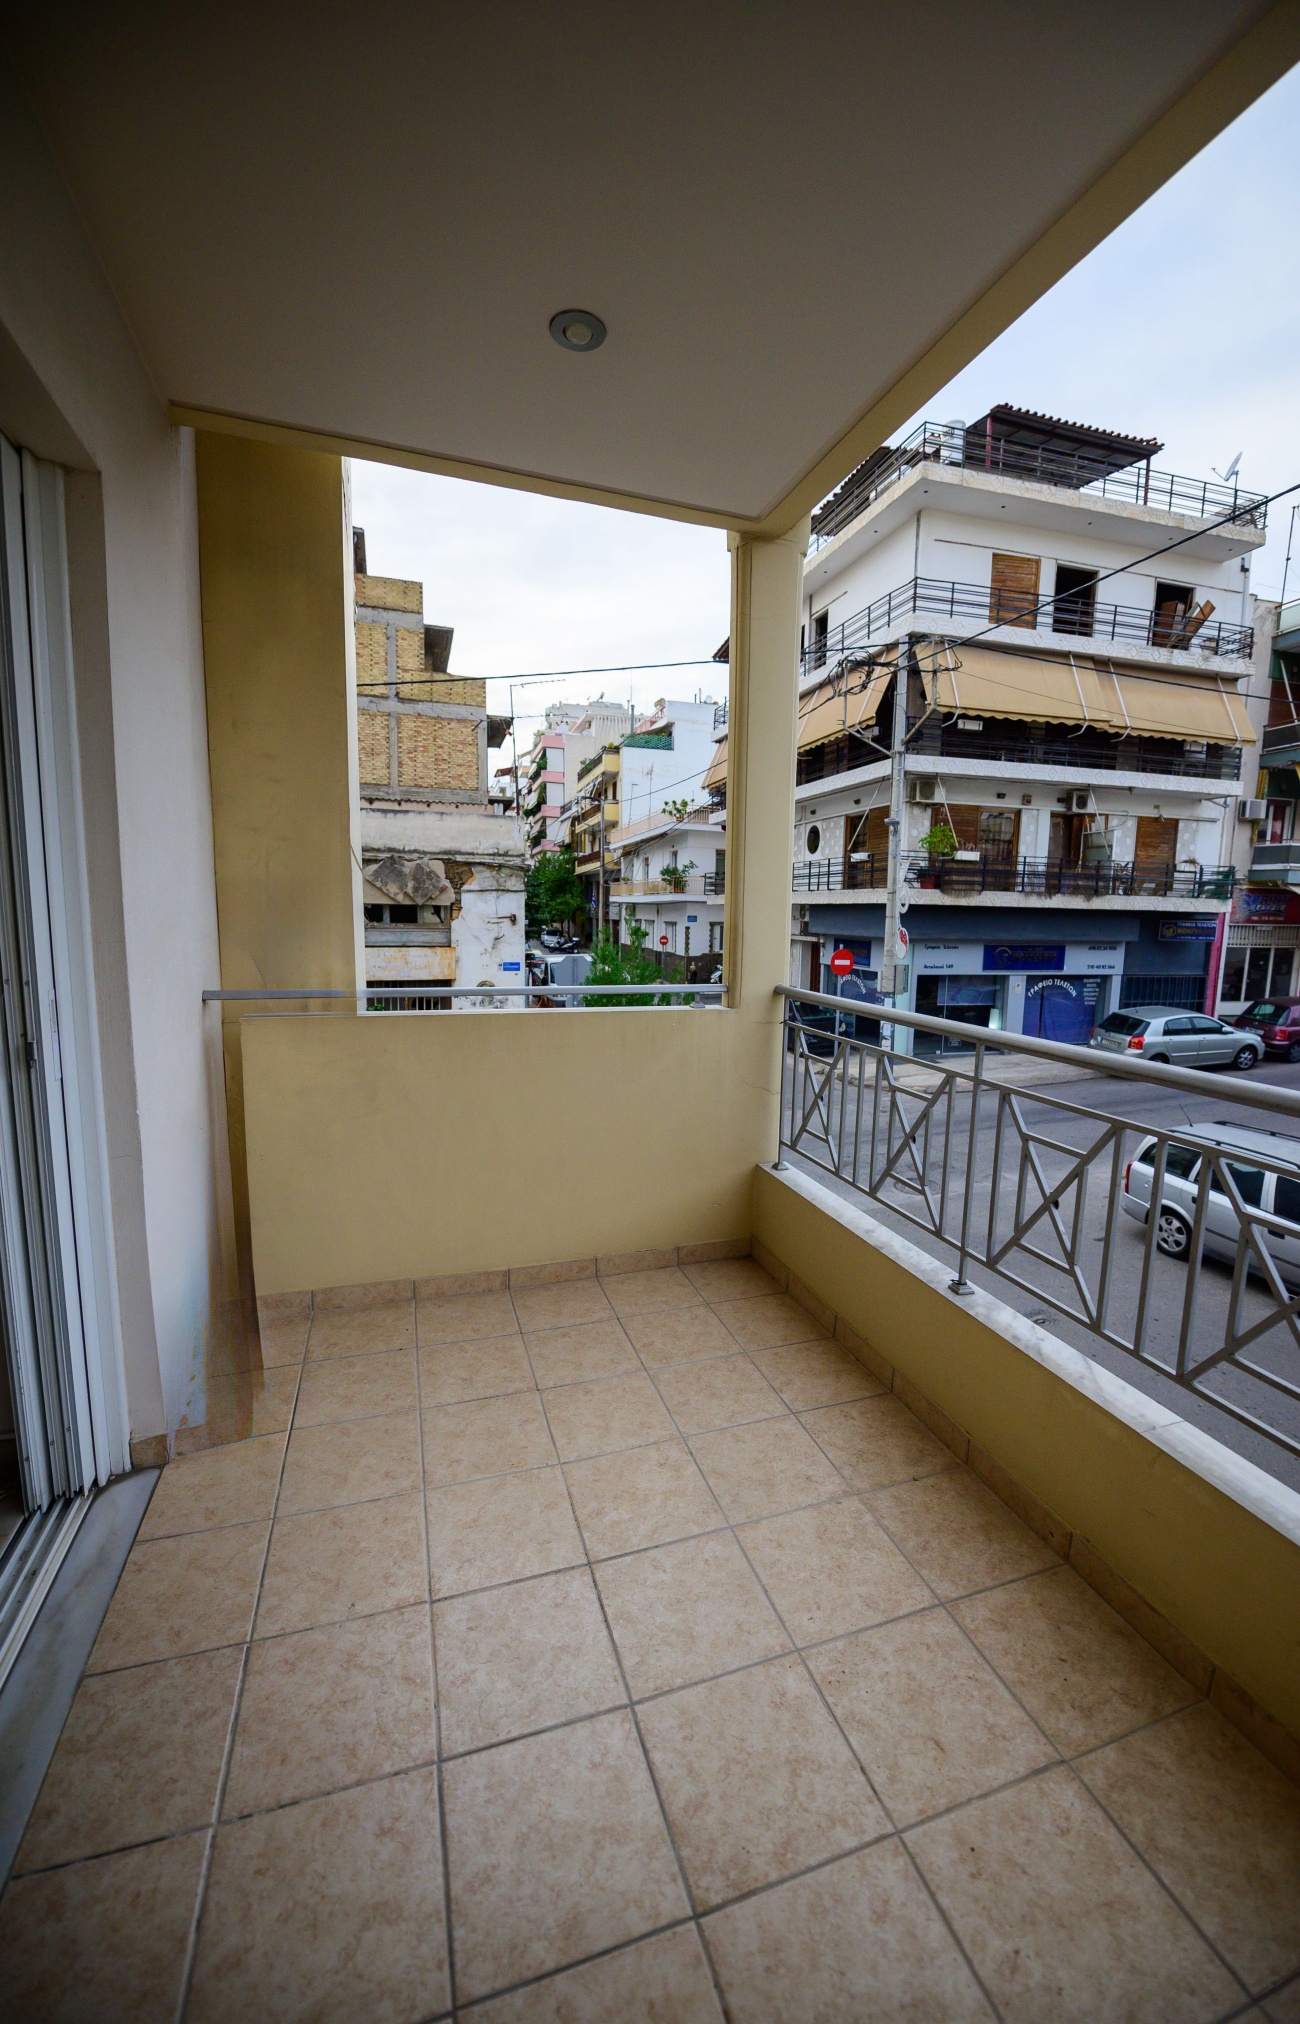 Ένα κομψό διαμέρισμα για πώληση στον Πειραιά: Η νέα προοπτική επένδυσης
